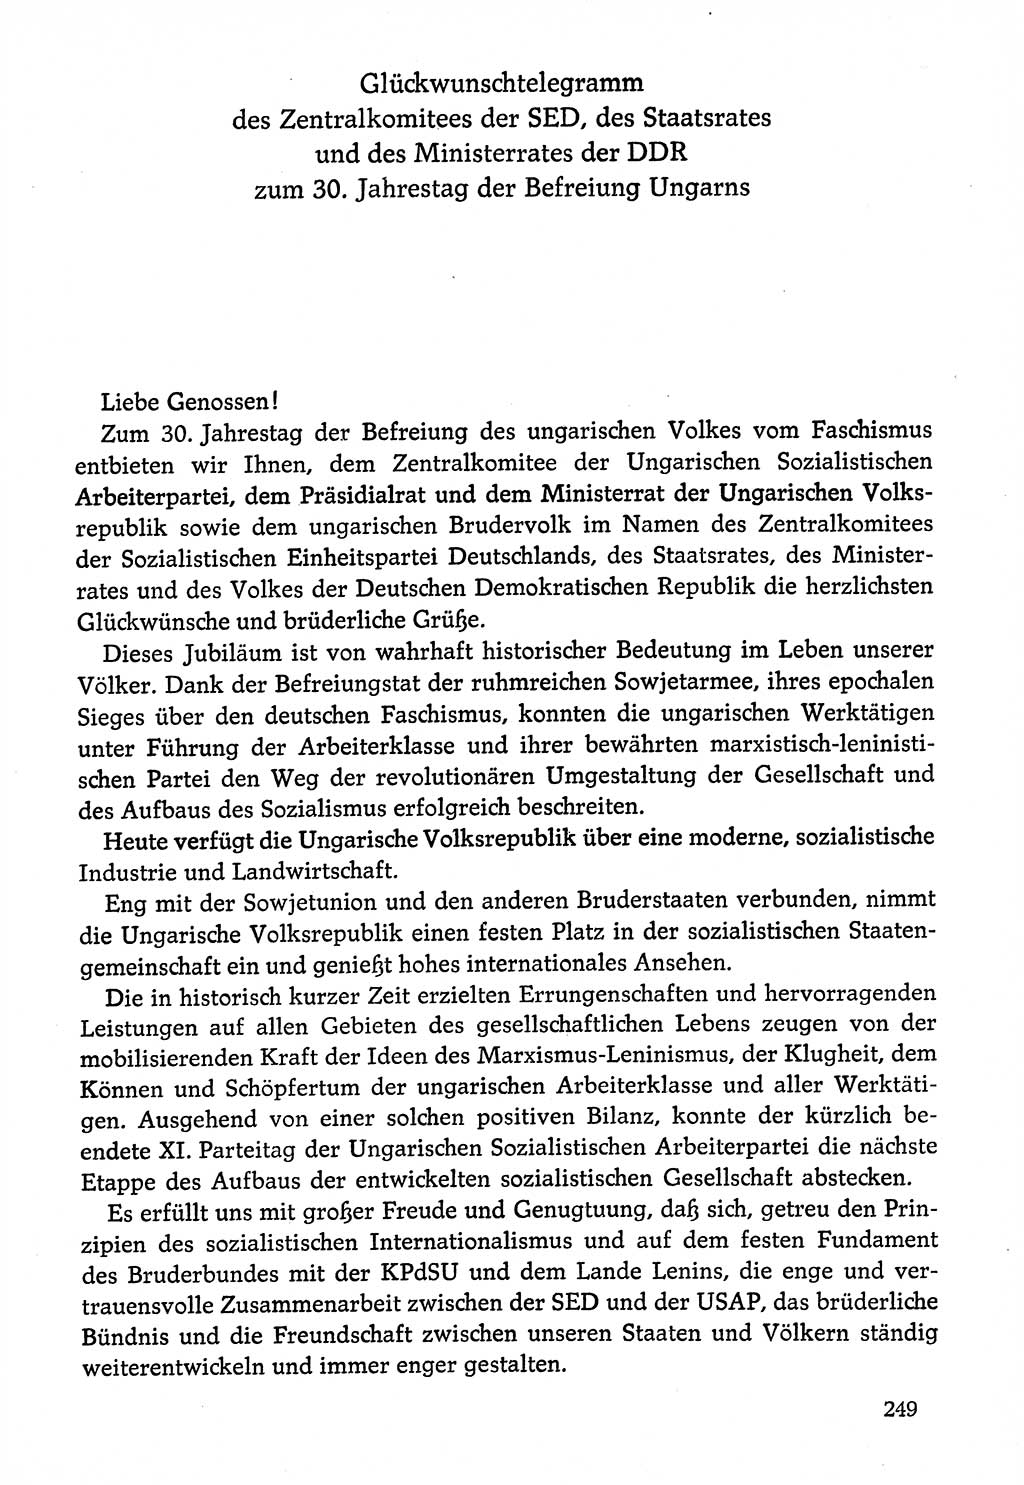 Dokumente der Sozialistischen Einheitspartei Deutschlands (SED) [Deutsche Demokratische Republik (DDR)] 1974-1975, Seite 249 (Dok. SED DDR 1978, Bd. ⅩⅤ, S. 249)